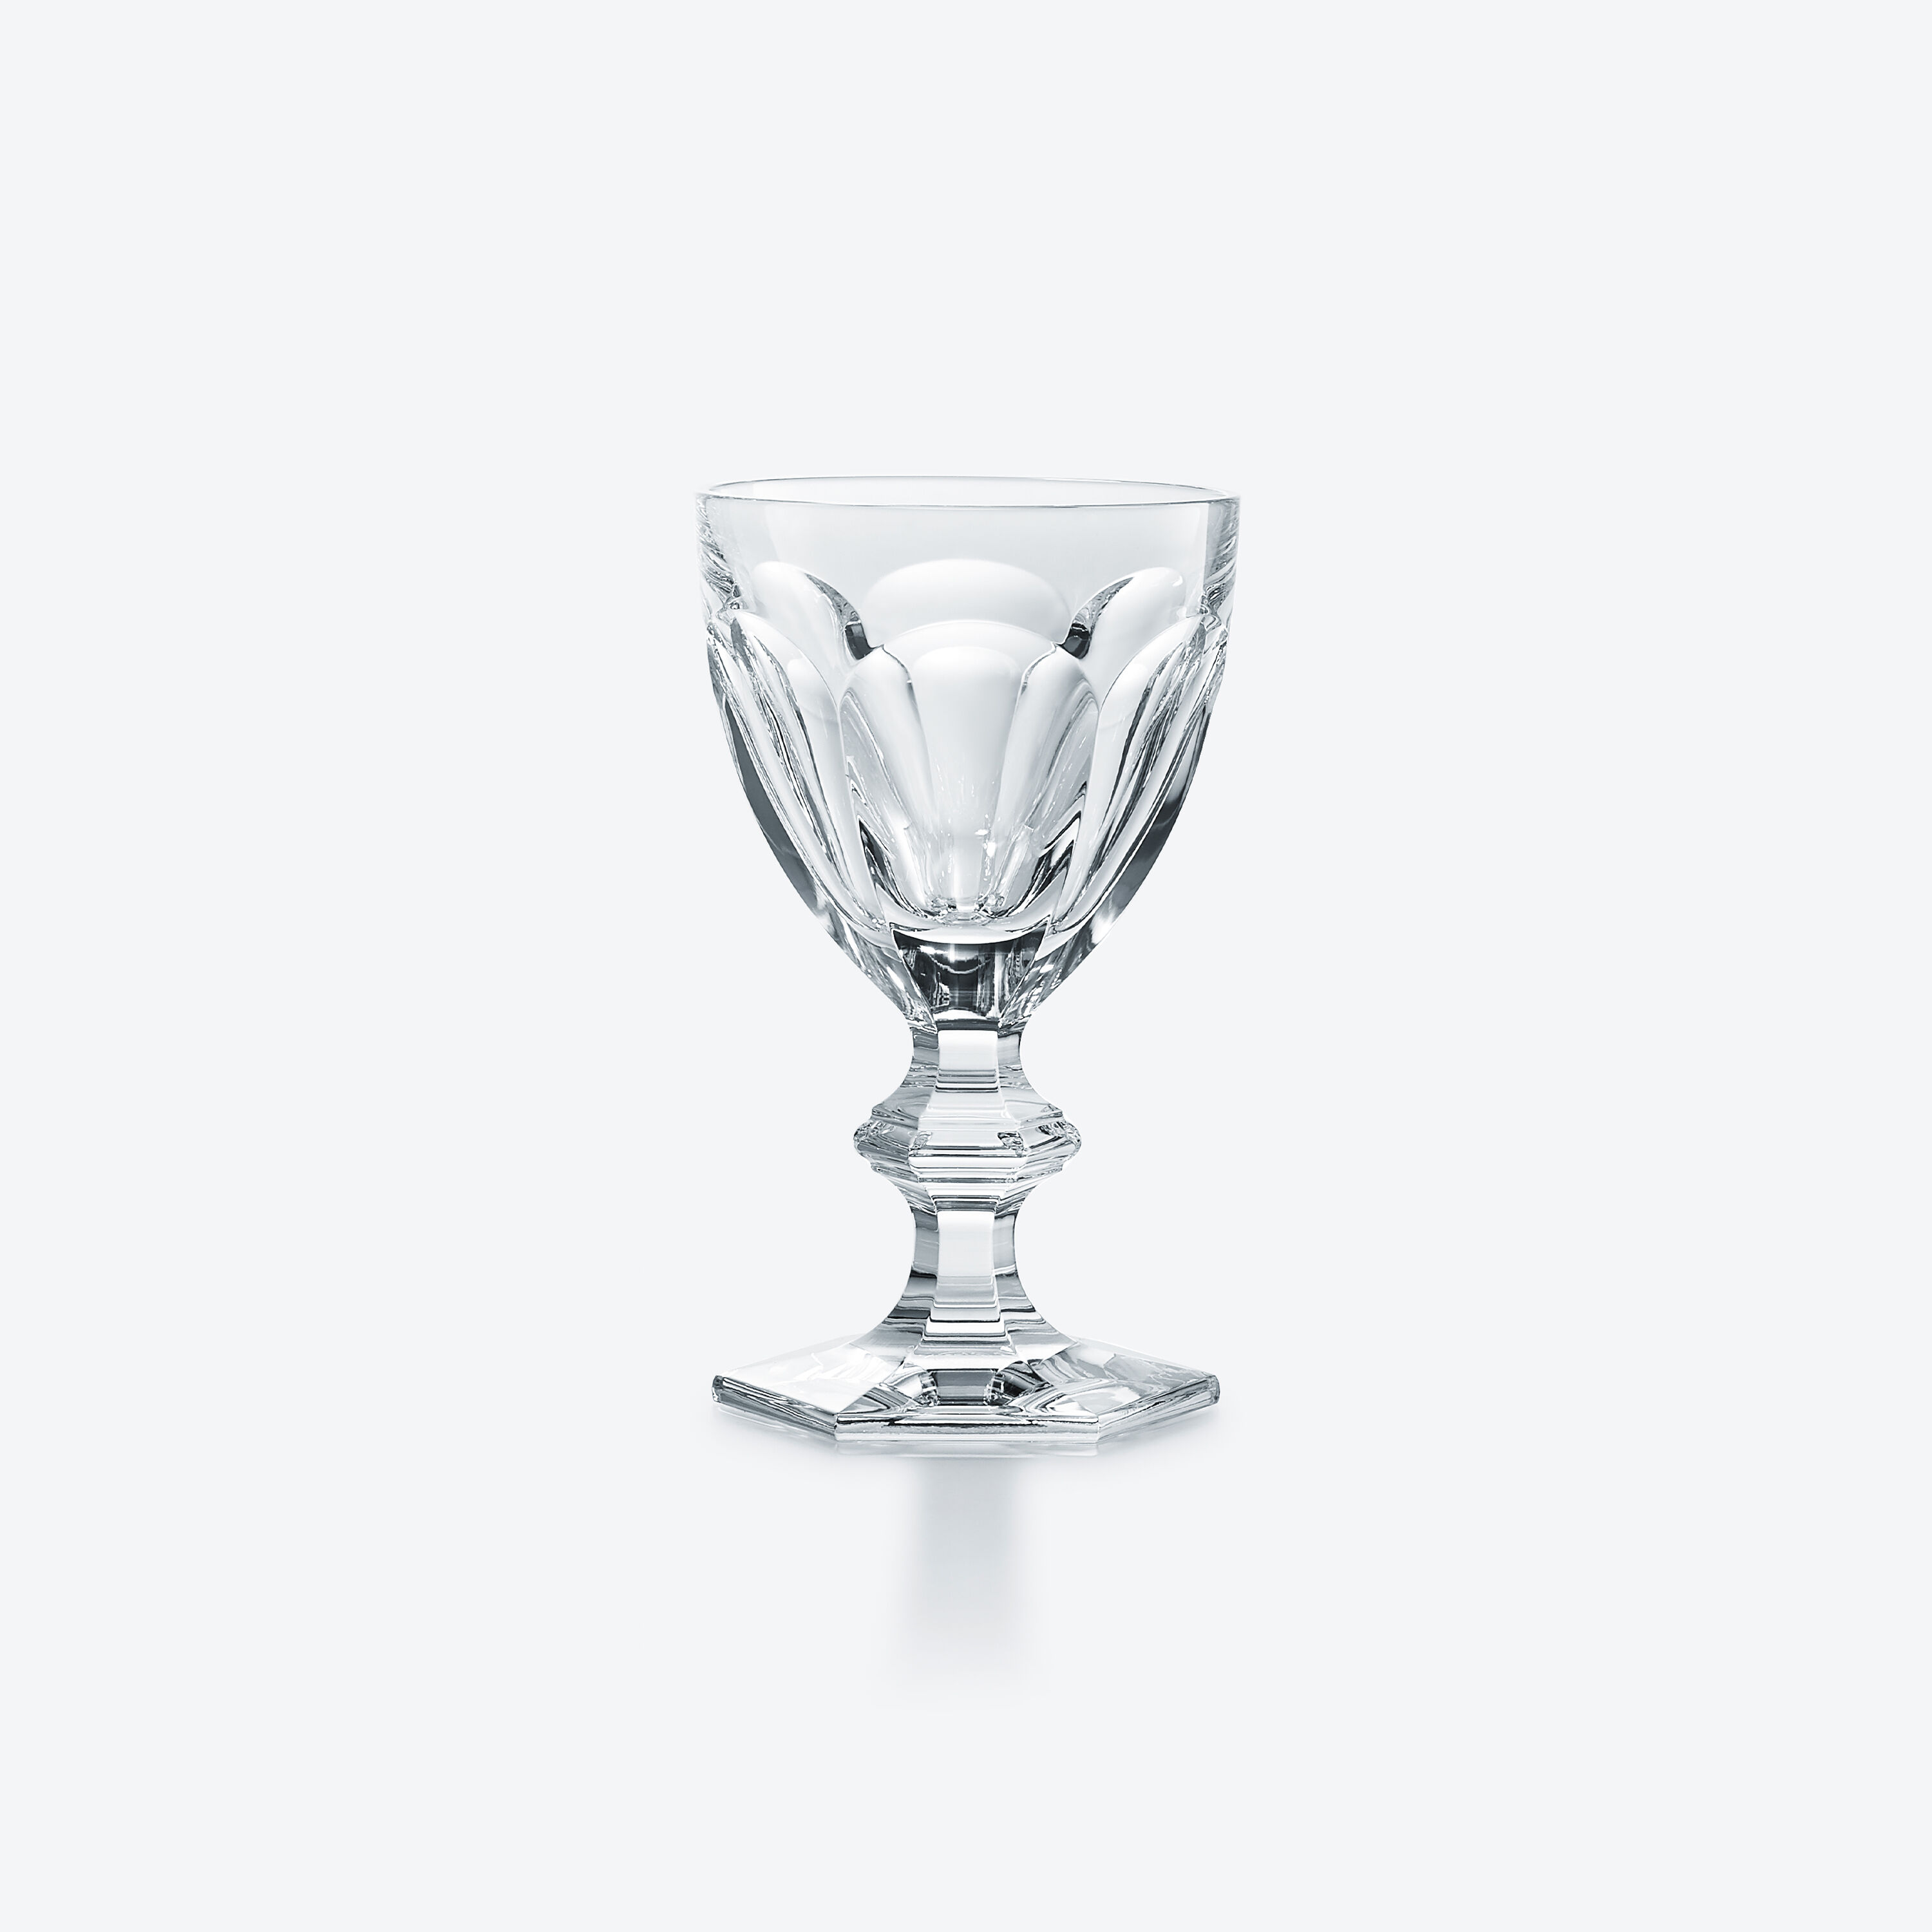 バカラ グラス ● アルクール ワイン グラス 2客12.5cm素材ガラス